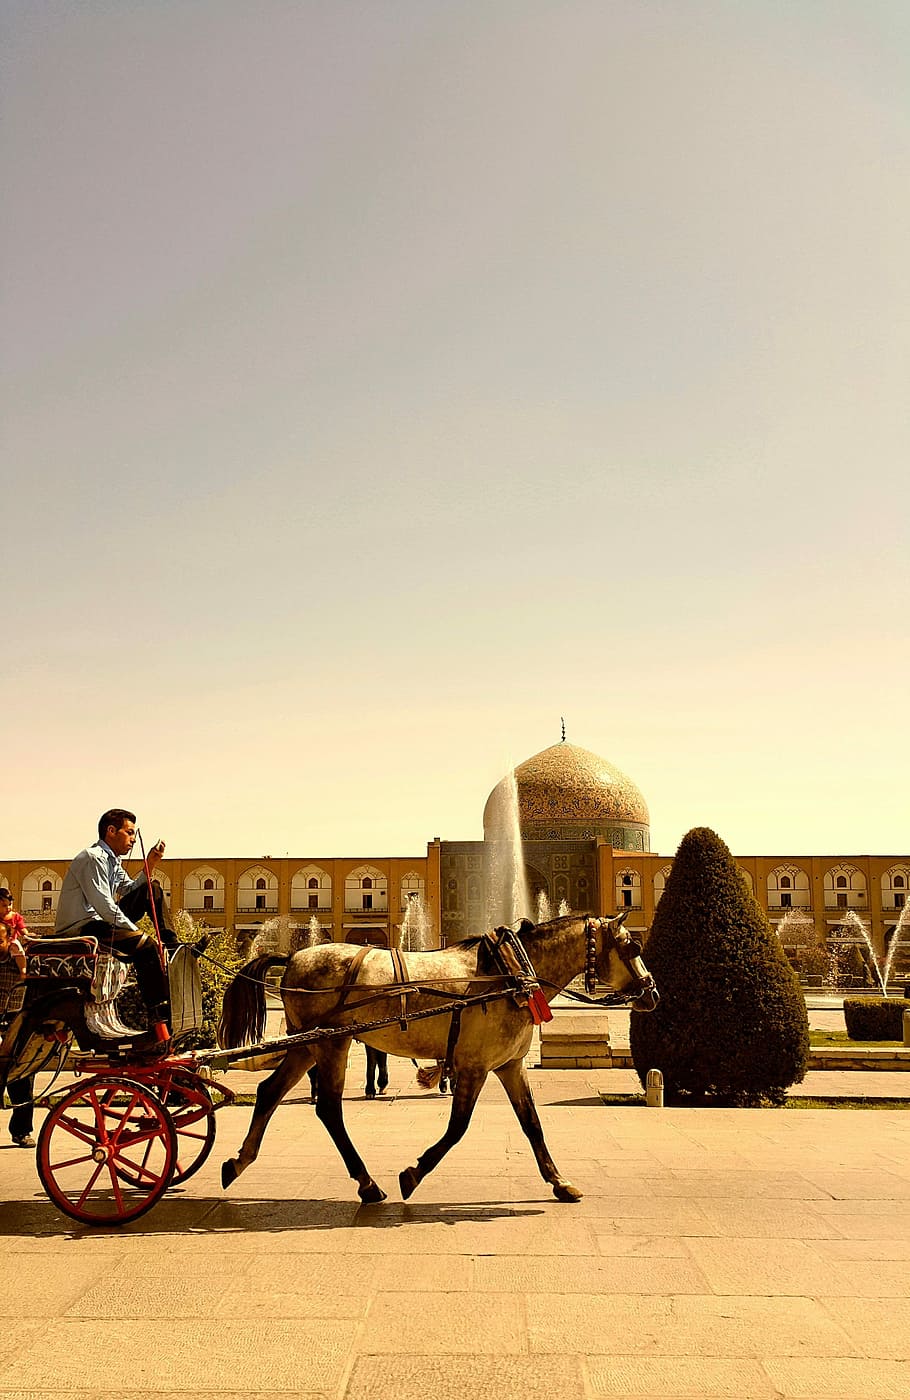 イラン, イスファハン, 馬車, モスク, 木, 馬, 暖かい, 歴史, 大人, 交通